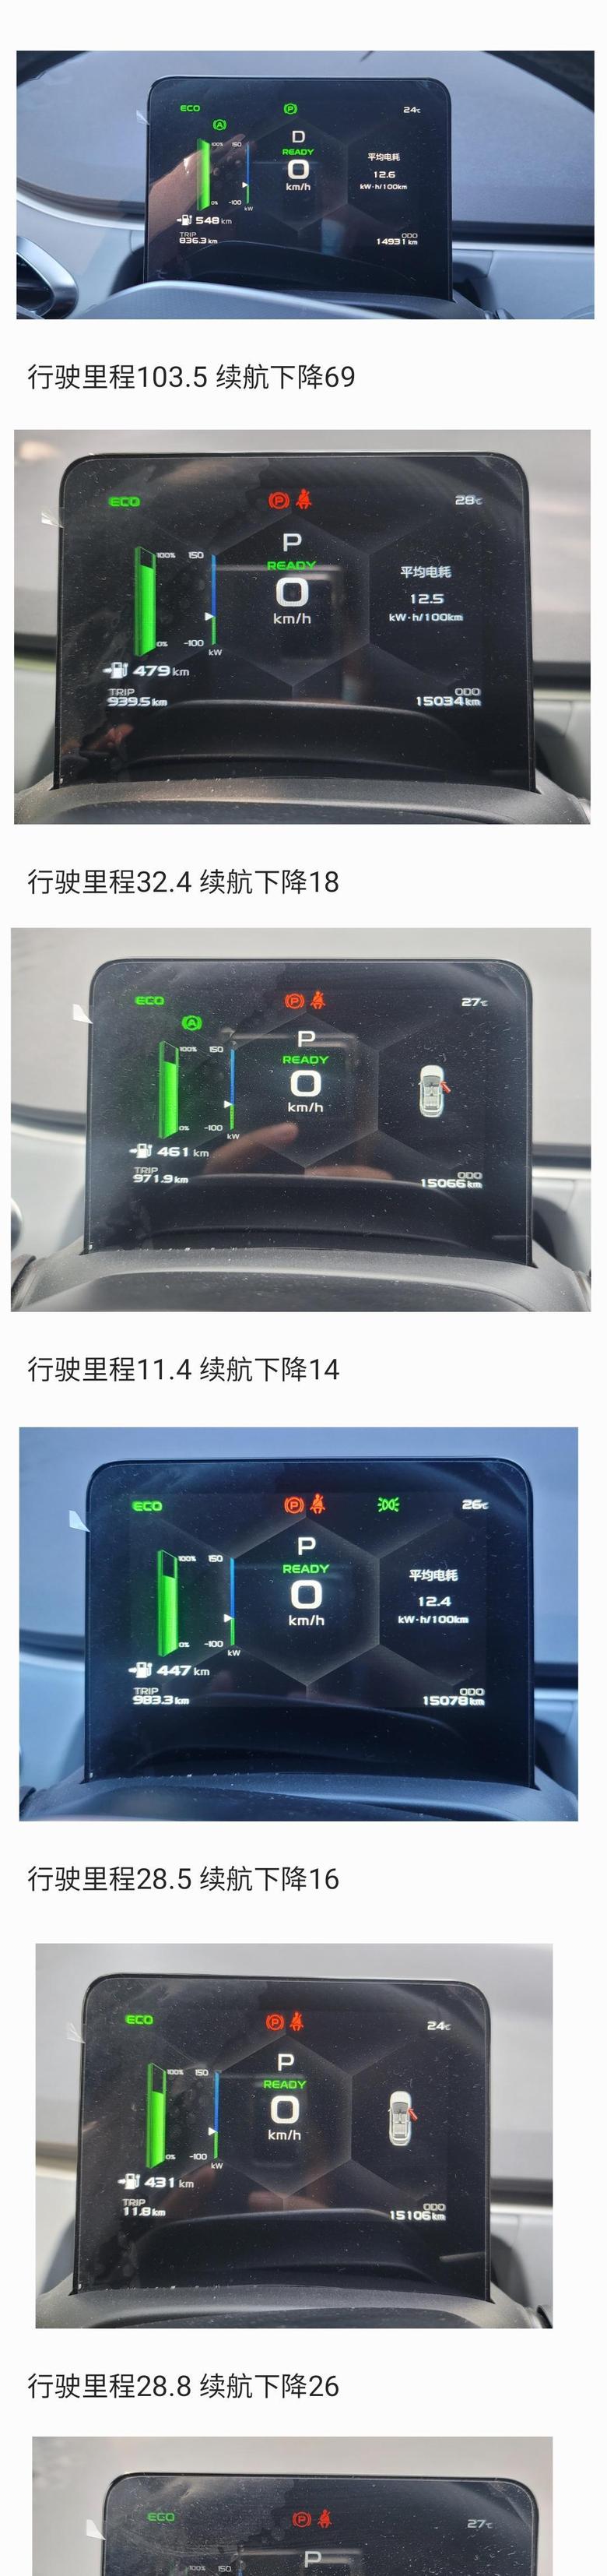 几何c 坐标北京购车一年总里程1.5w公里上一次充电用7kw慢充进行了一次满充记录一下目前续航能力的真实情况近期北京温度28°左右车内一直空调24°二挡风量ECO模式目前实际行驶了204.3公里表盘显示续航减少143公里目前来看续航情况依然出色后面将持续更新